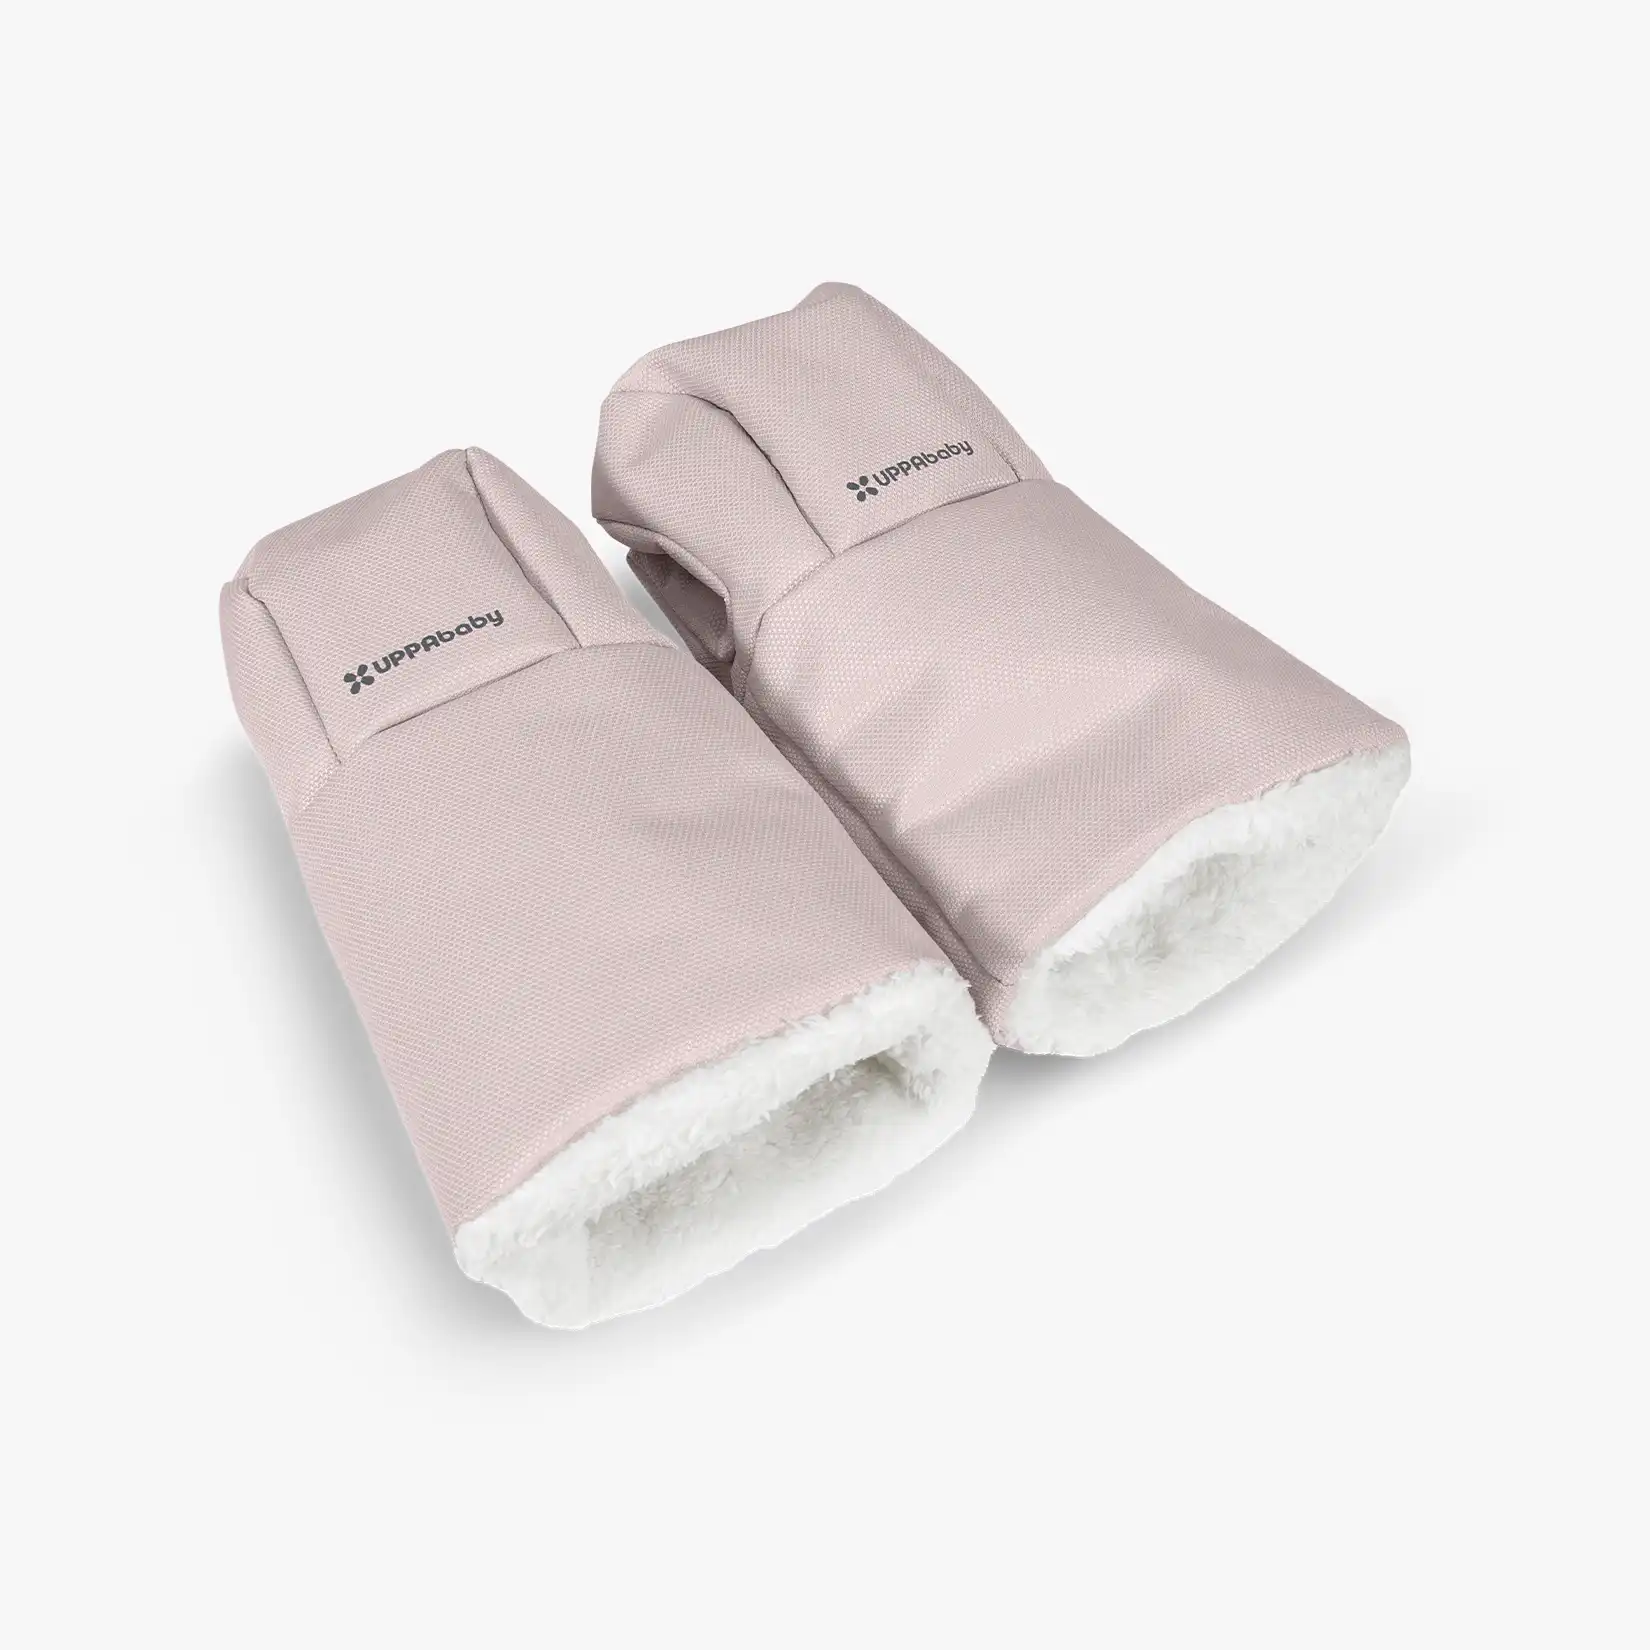 UPPAbaby Cozy Handmuff - Handschuhe